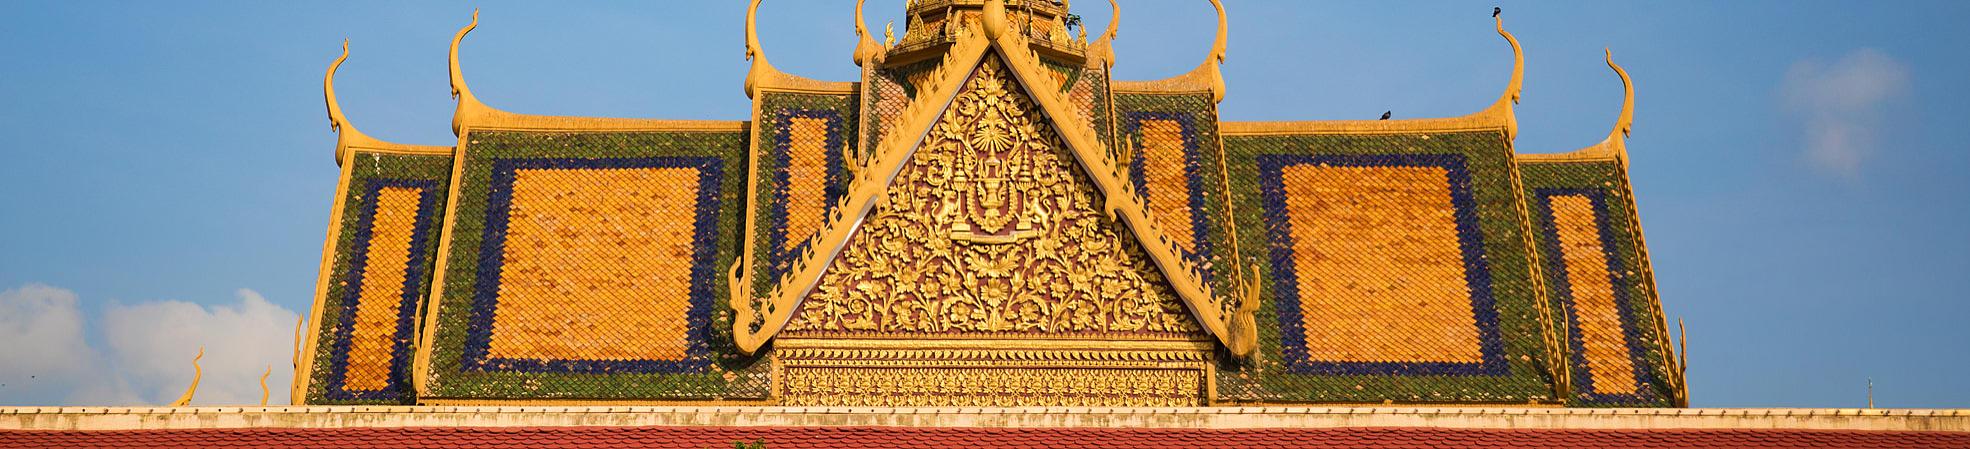 Cambodia Tourist Attractions 